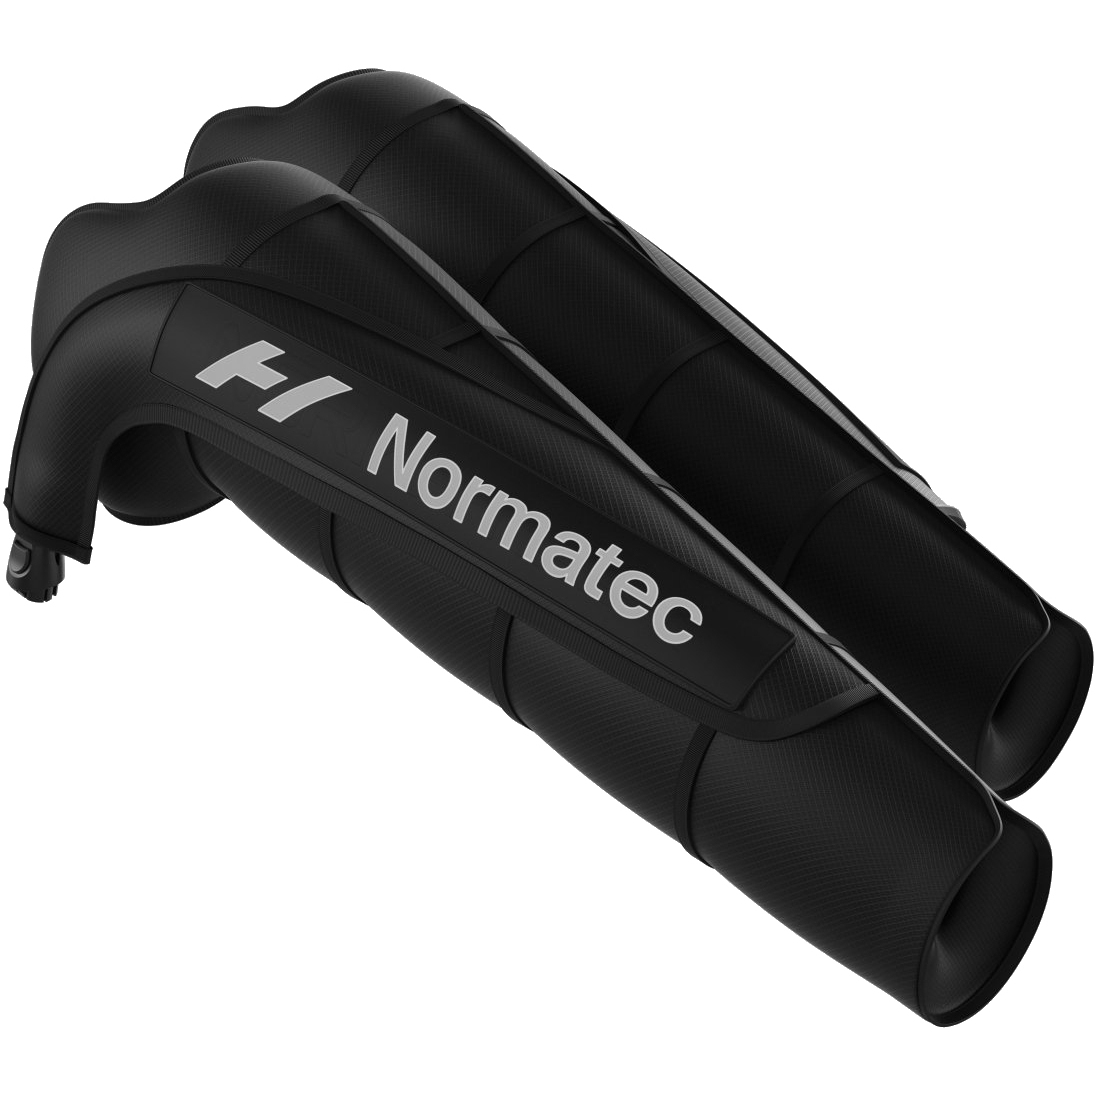 Photo produit de Hyperice Attache pour Bras - Normatec 3 Arm Attachments - Paire - noir